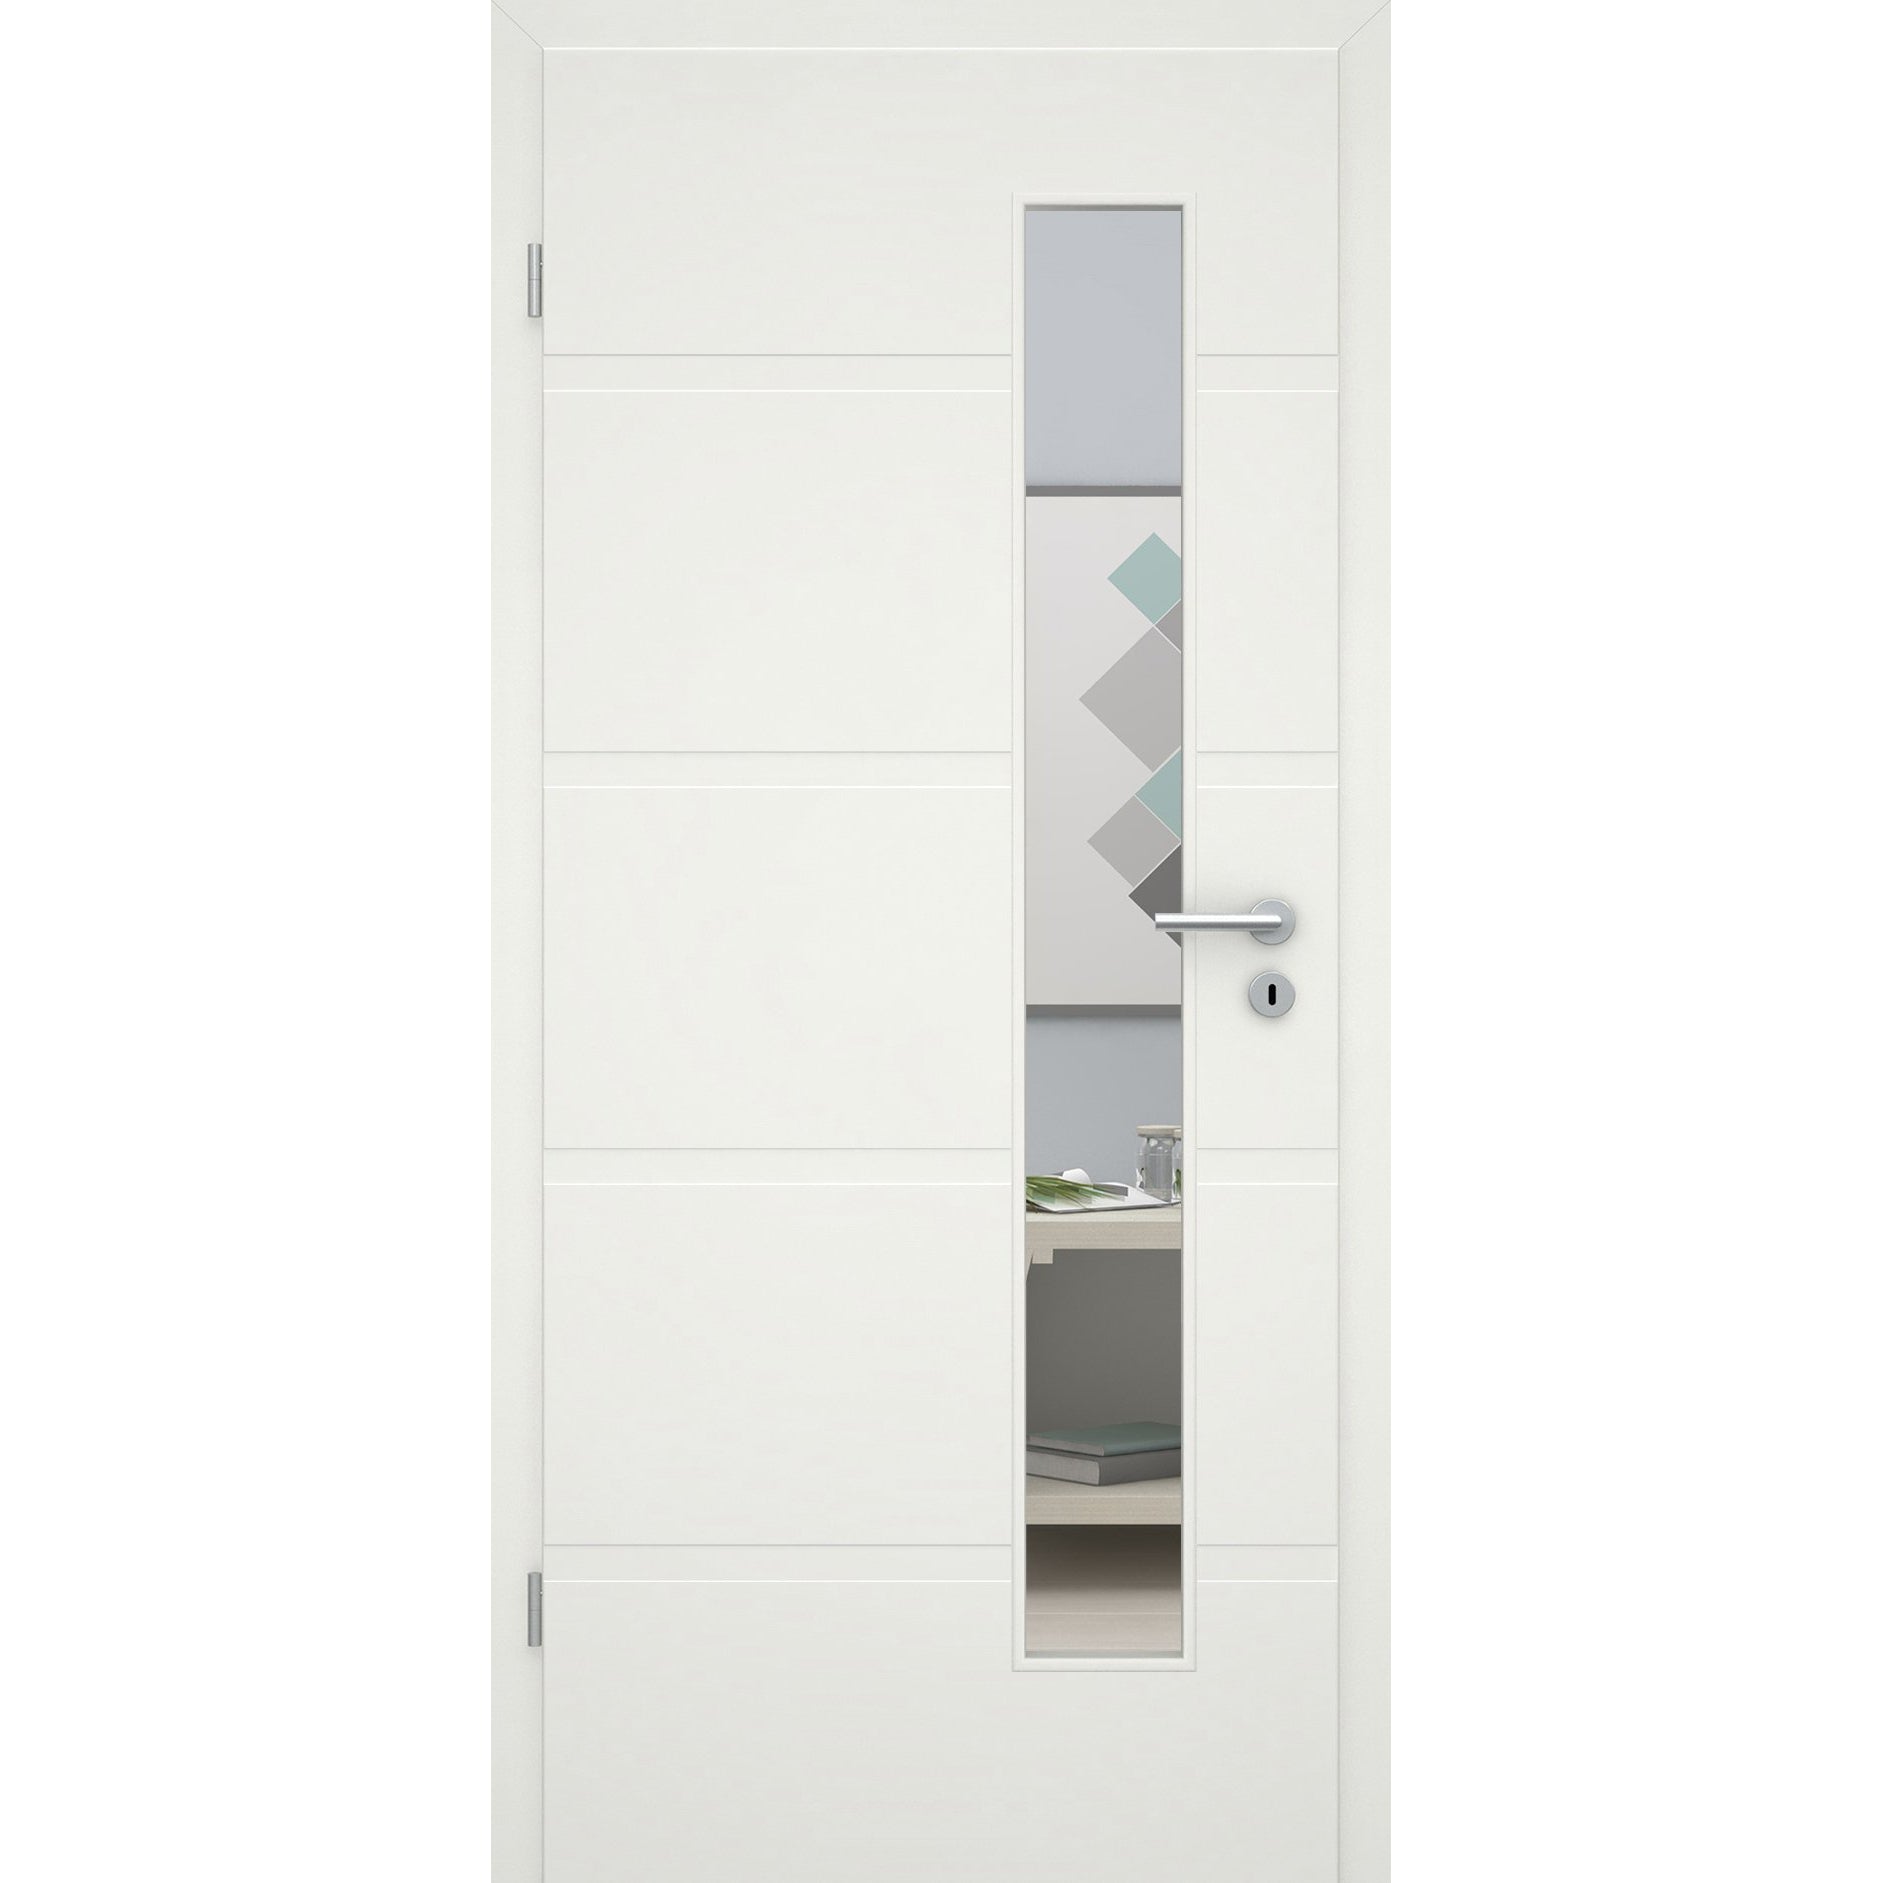 Zimmertür mit Zarge und Lichtausschnittsoft-weiß 4 breite Rillen Eckkante - Modell Designtür QB41LAS